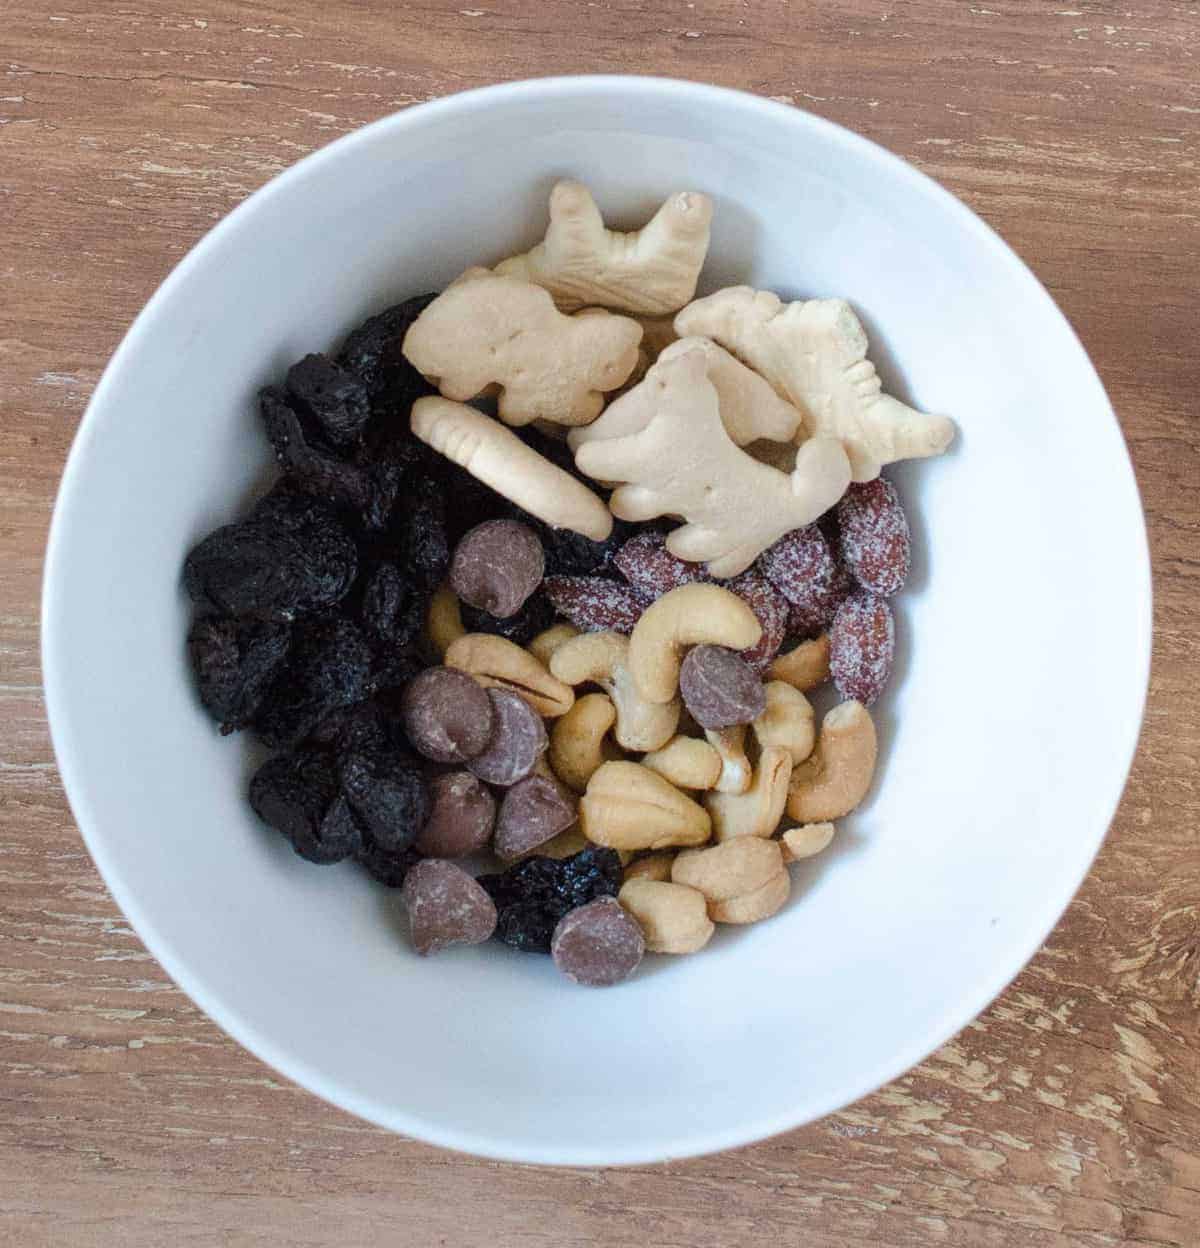 Trail Mix - torkade körsbär, honung rostade mandlar, mjölkchoklad chips, cashewnötter och djur kex.